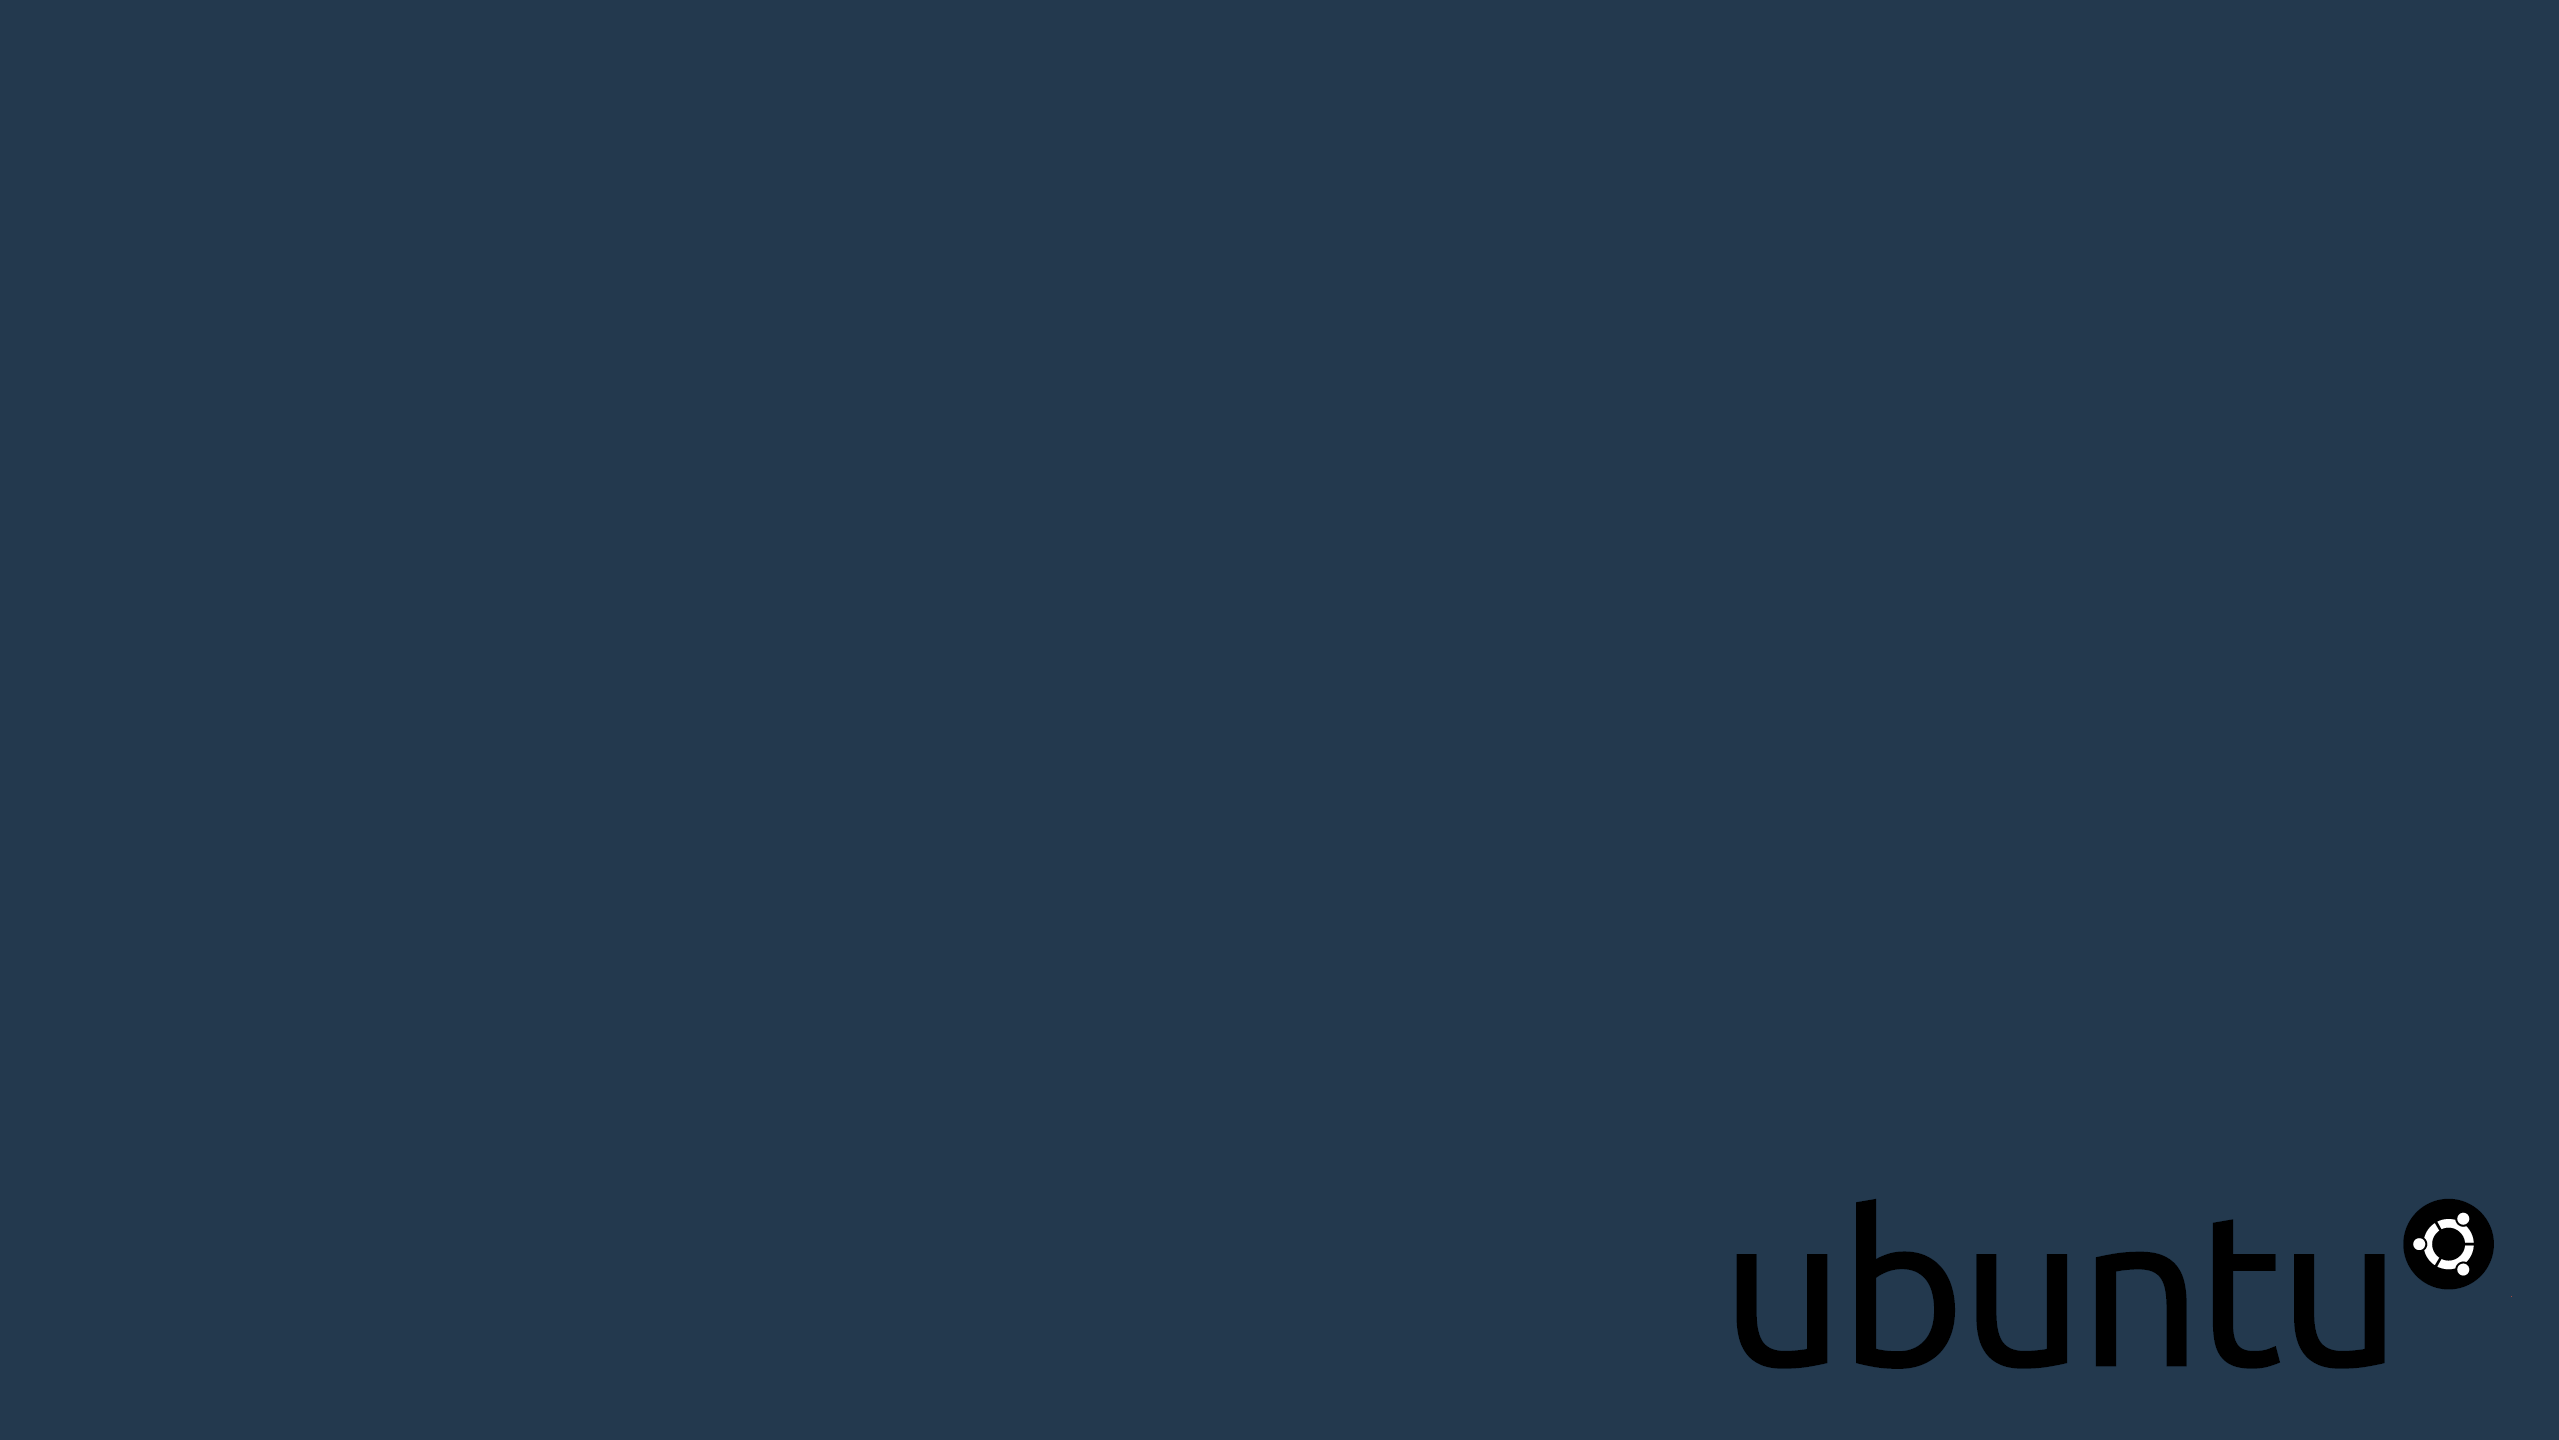 Linux Ubuntu Minimalism Technology Blue Background 2559x1440